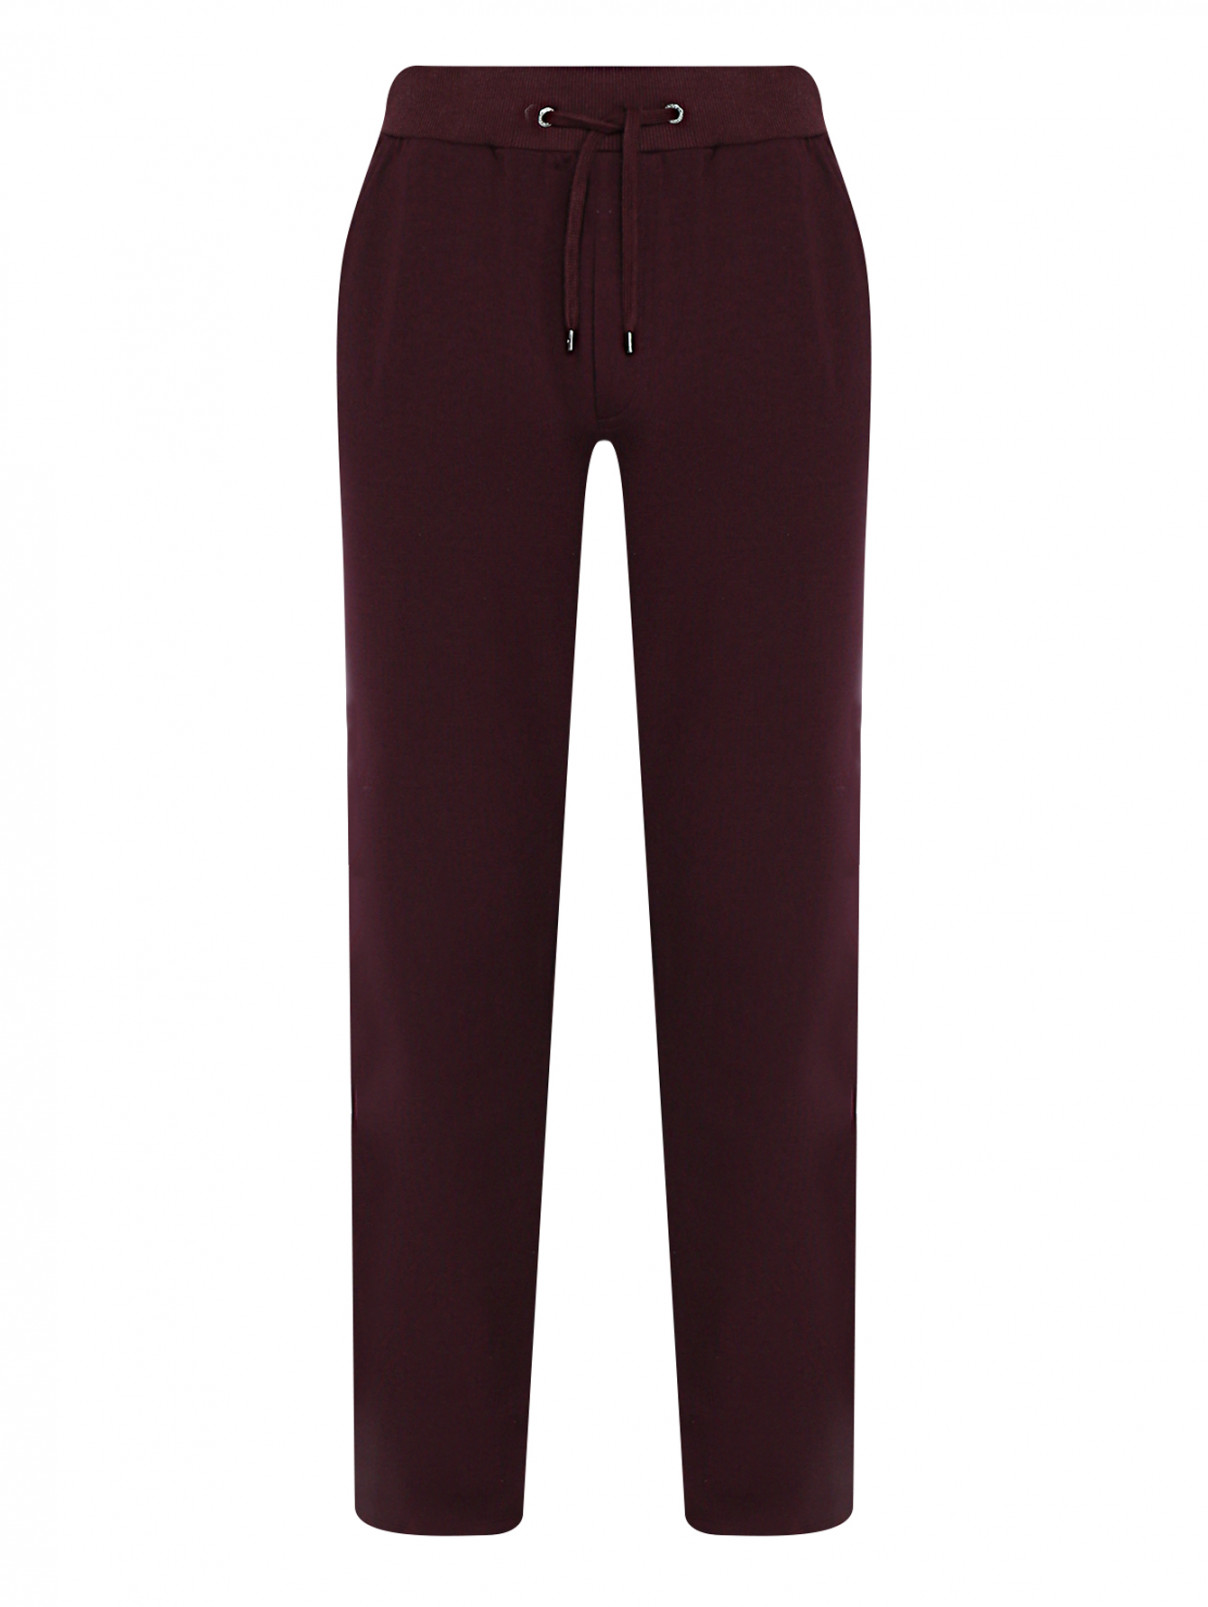 Трикотажные брюки на резинке с карманами BOSCO  –  Общий вид  – Цвет:  Красный